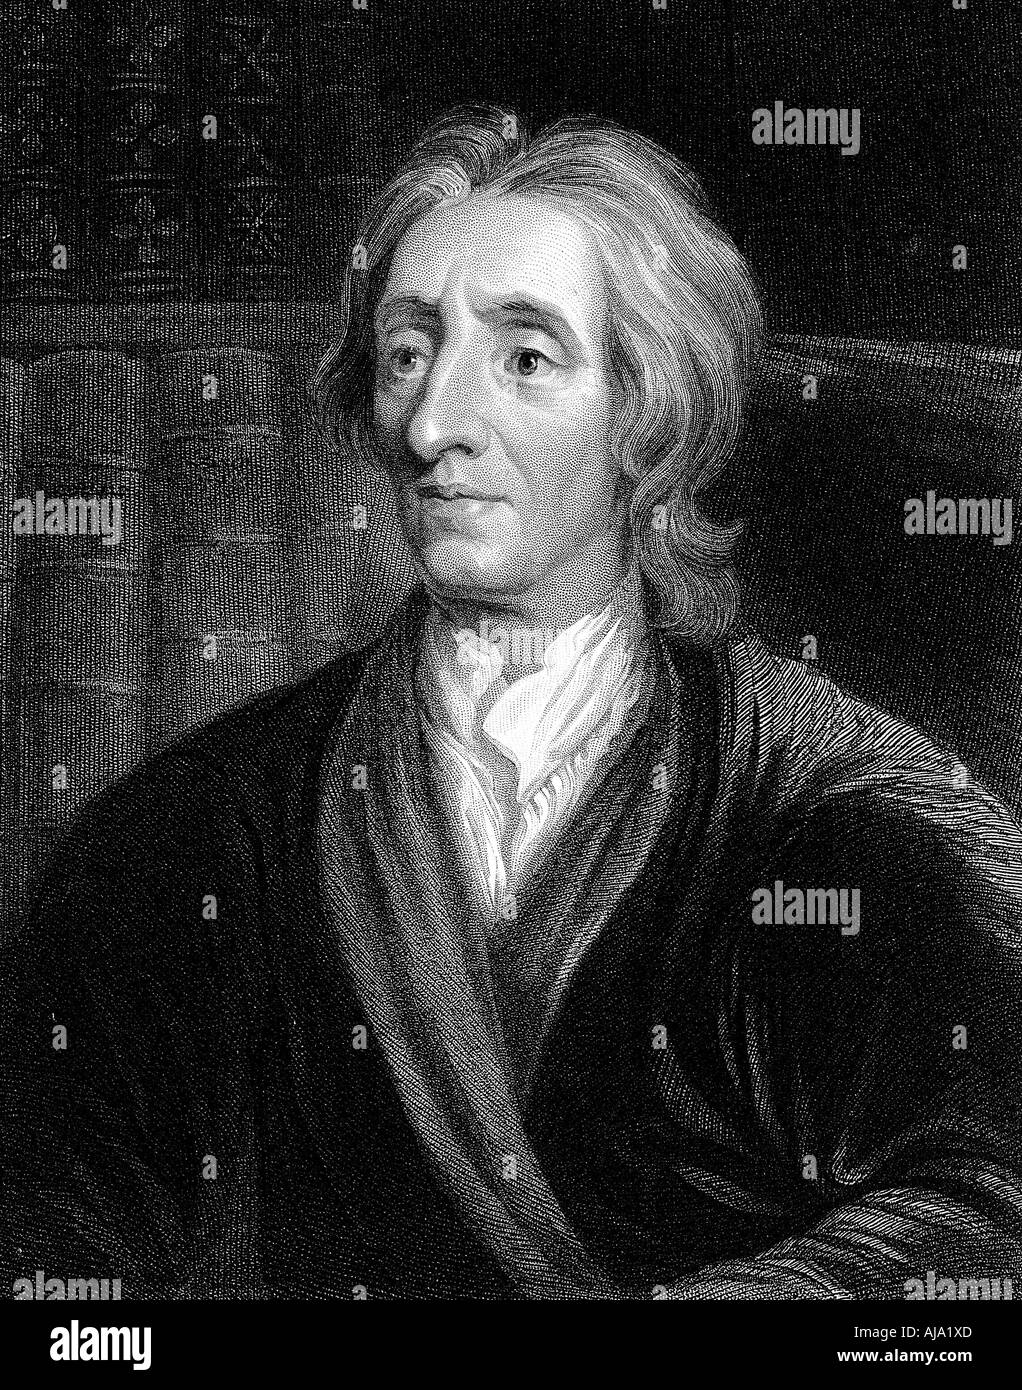 John Locke, filósofo inglés, c1680-1704. Artista: Sir Godfrey Kneller Foto de stock